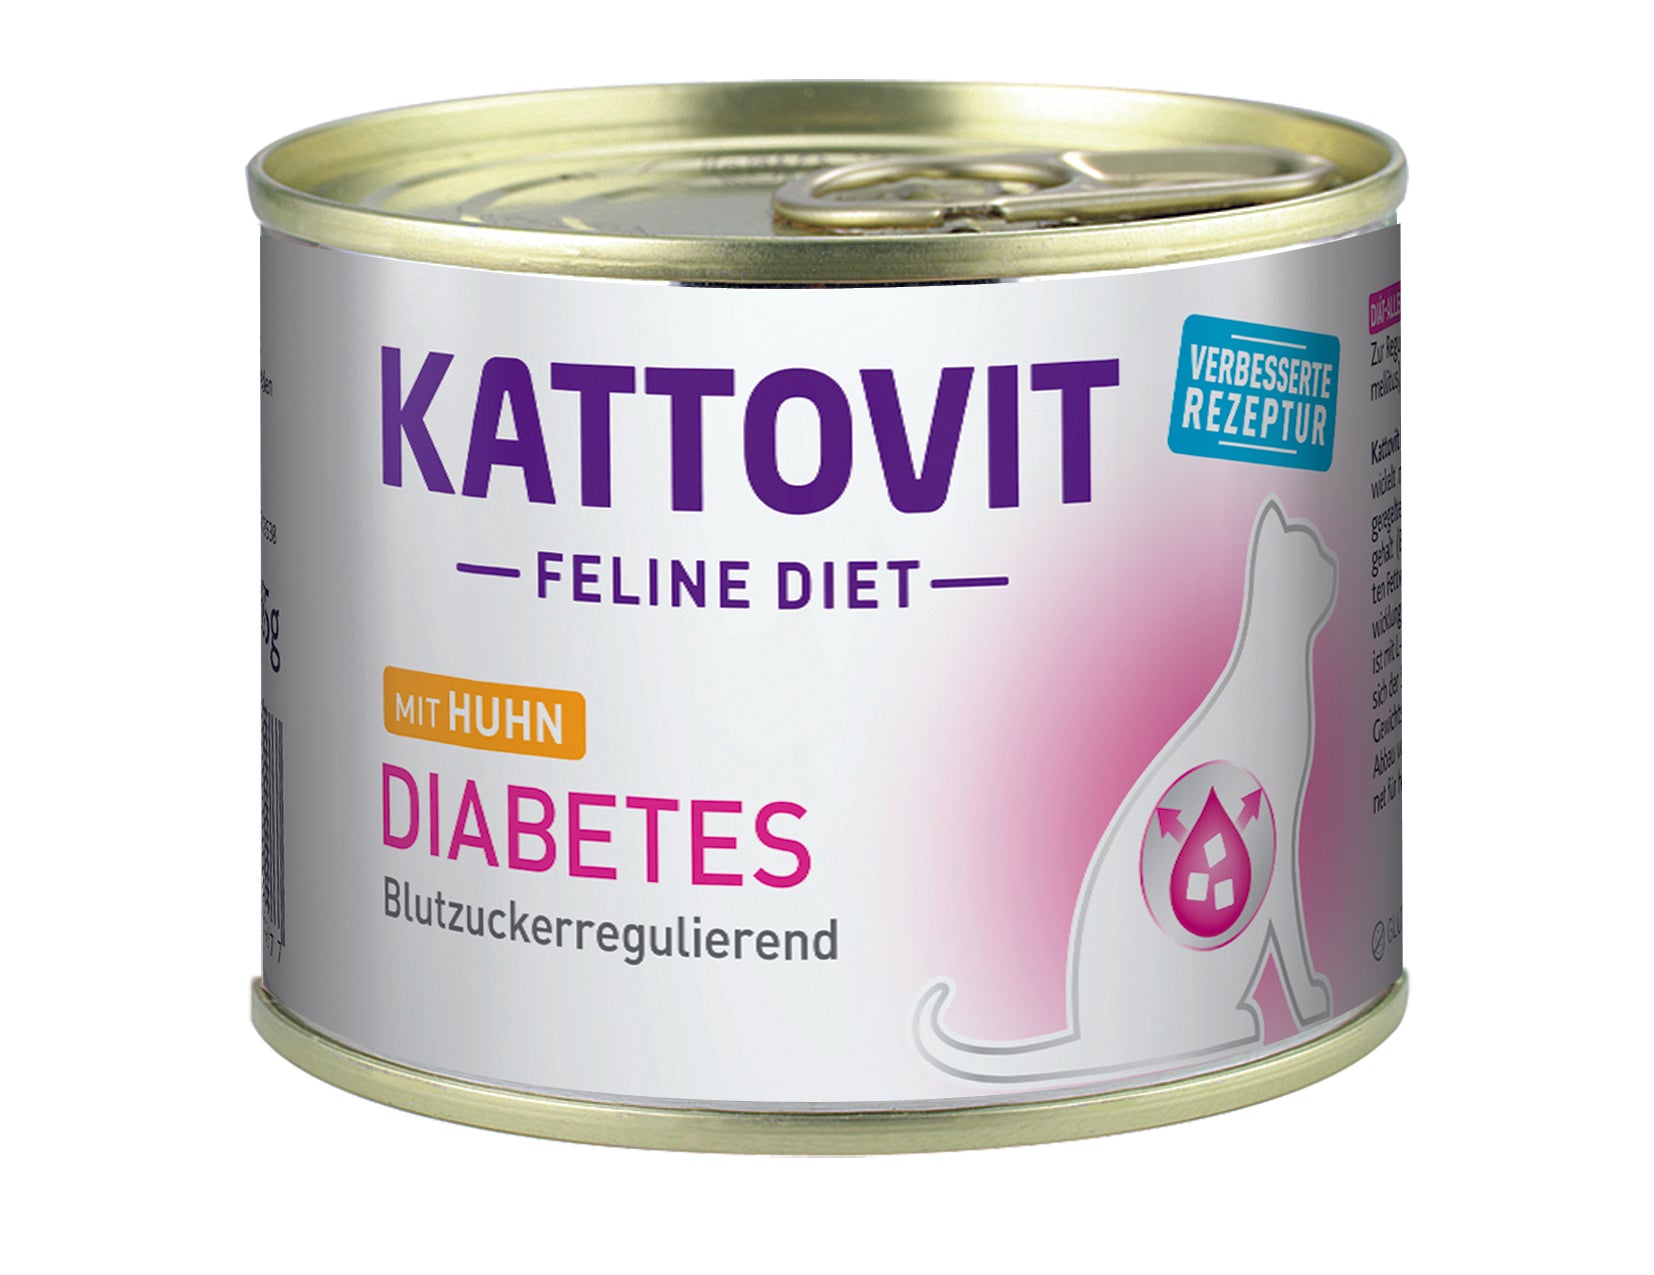 Kattovit Feline Diet Diabetes (M-Rezeptur) - zoo.de